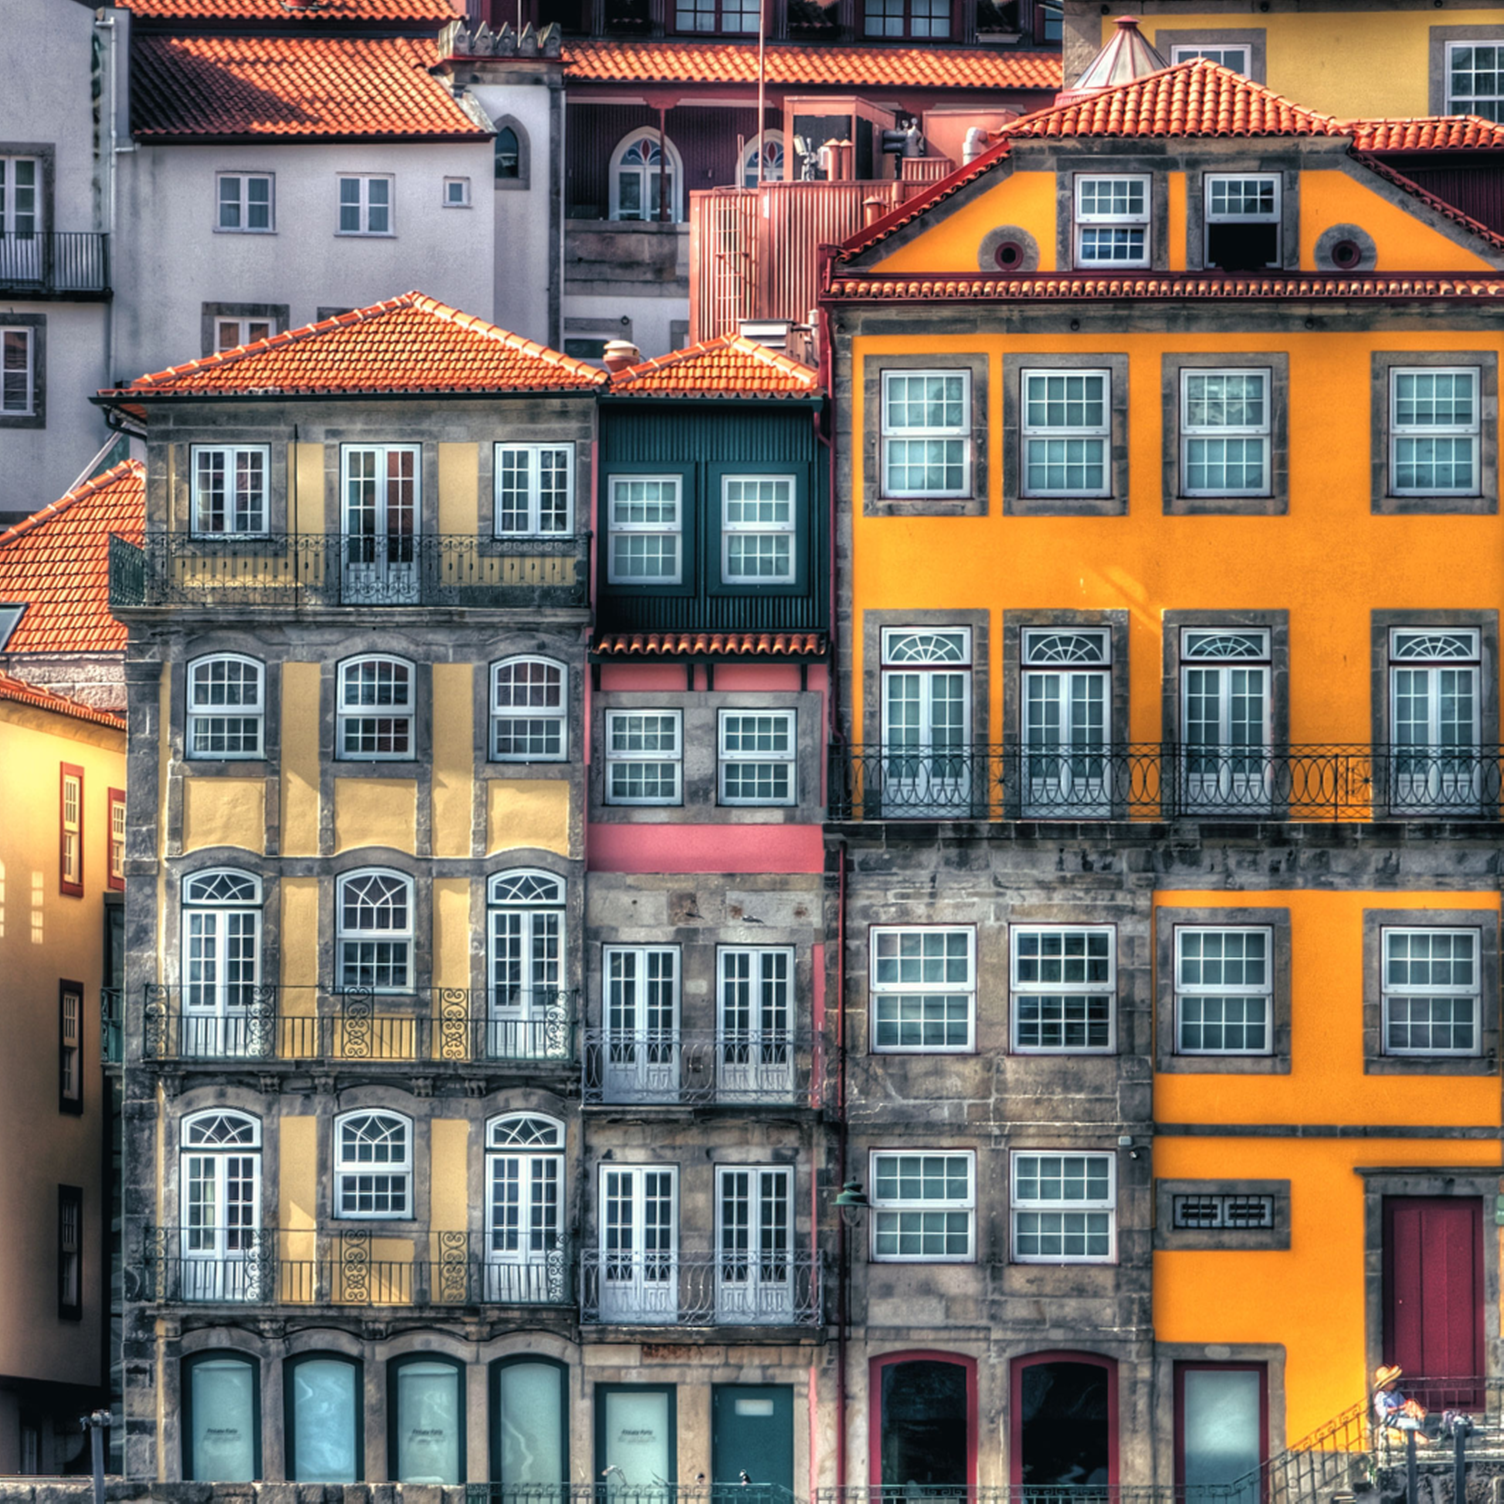 Las coloridas fachadas de los edificios del distrito de Ribeira de Oporto